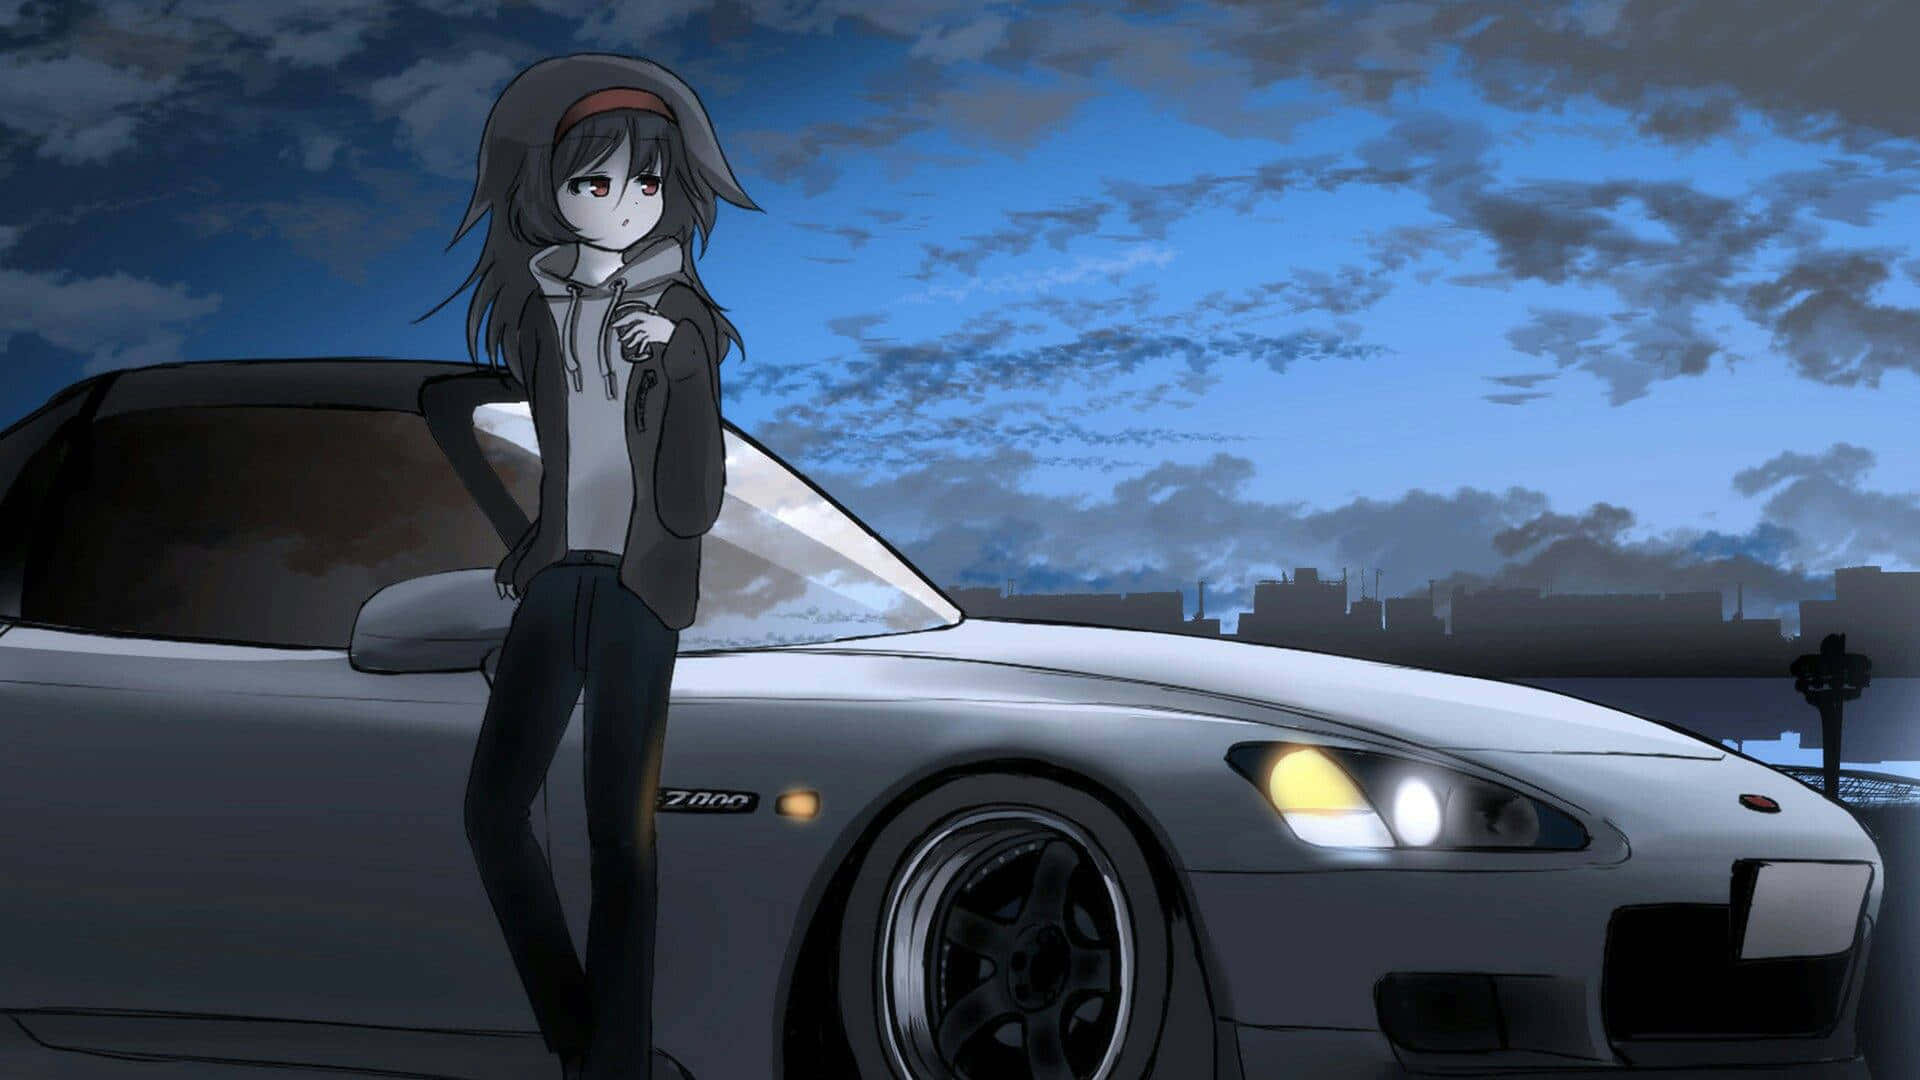 KREA - cute anime girl driving an Autozam AZ1, anime style